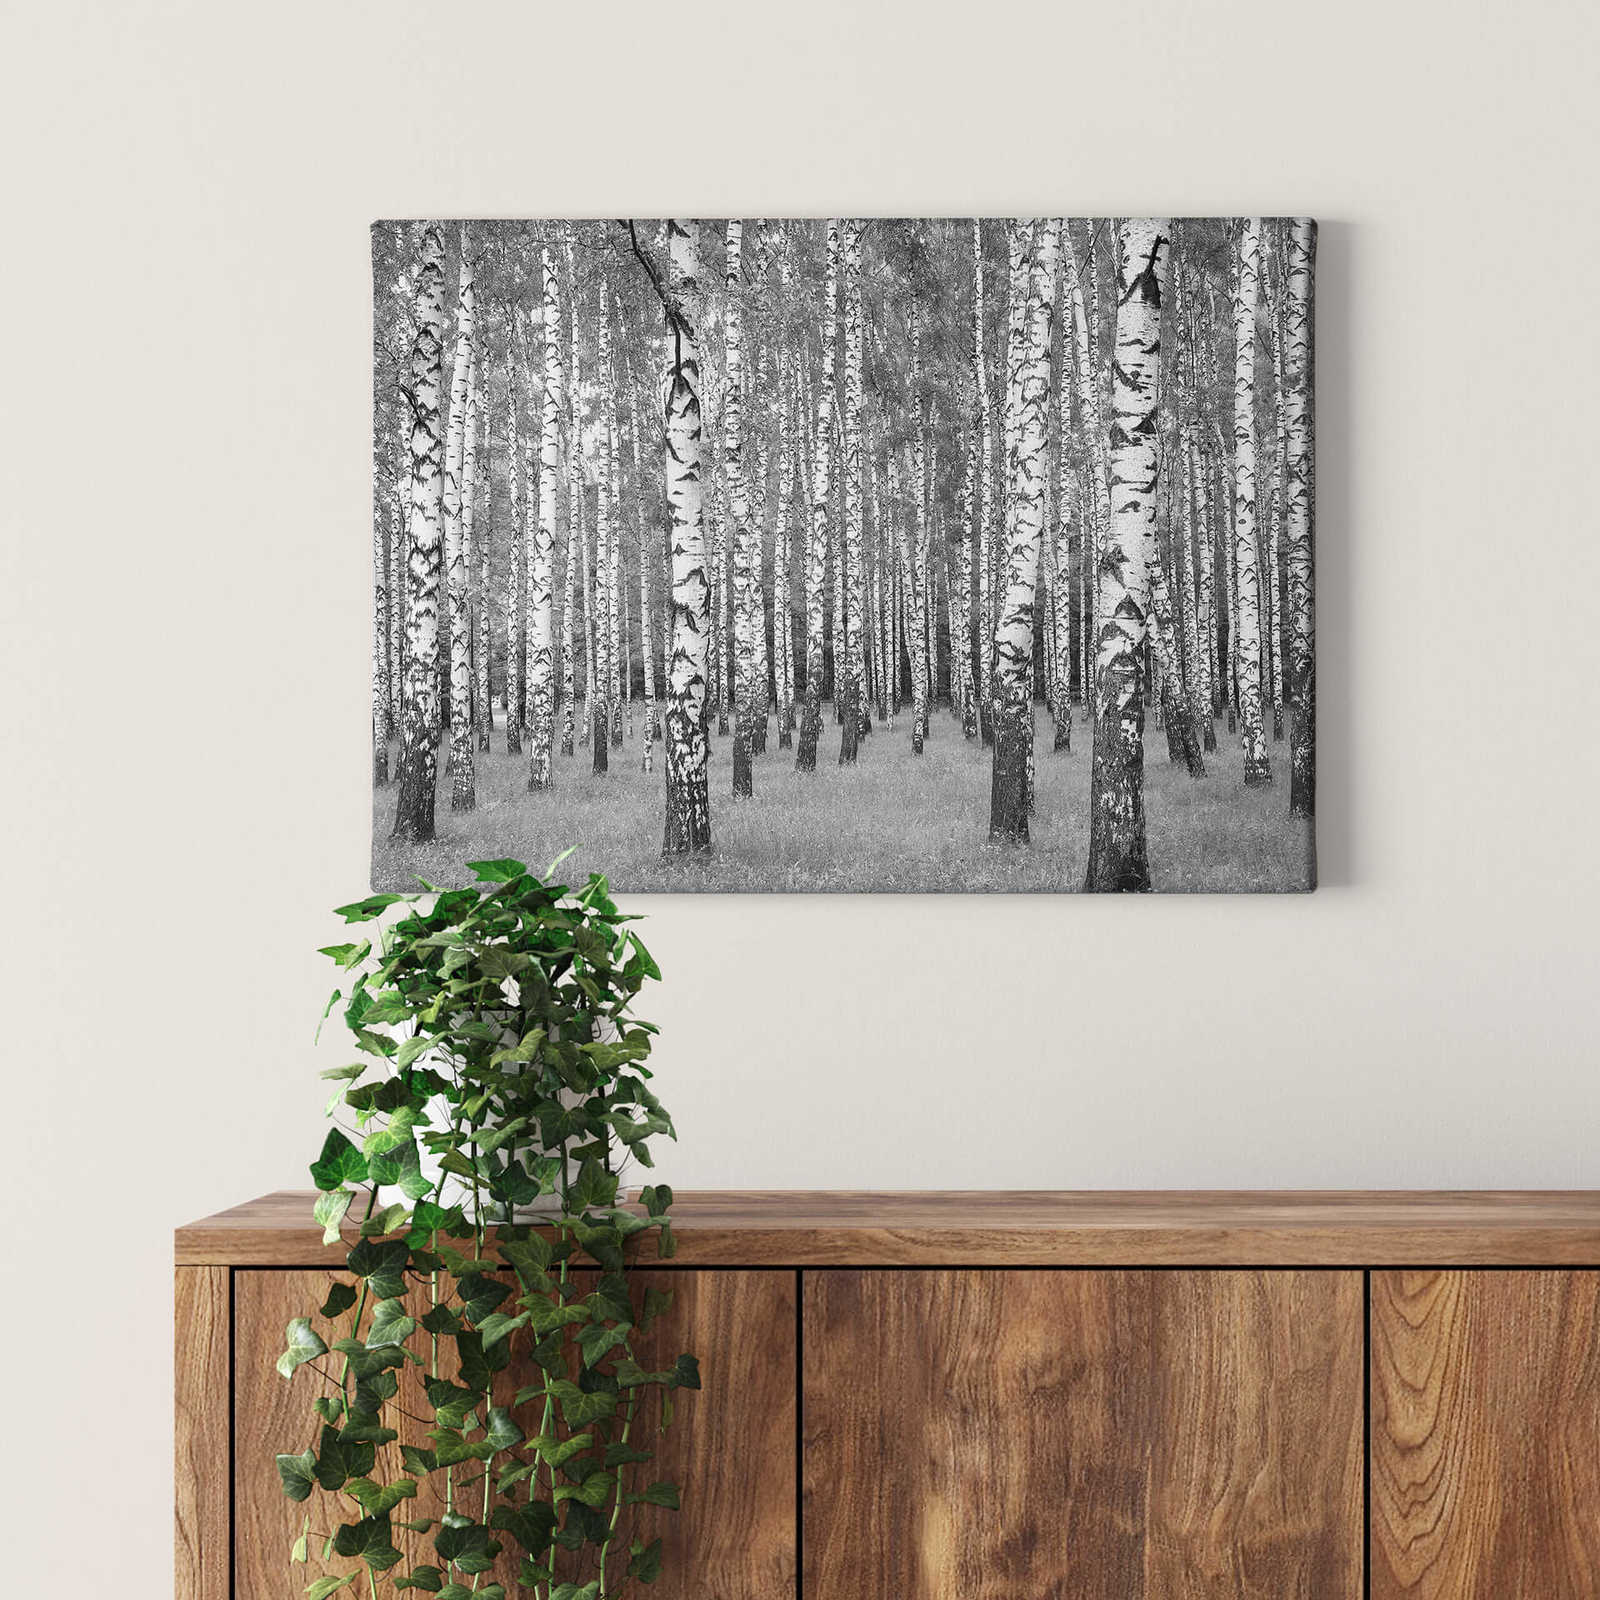             Pittura su tela della foresta di betulle in bianco e nero - 0,70 m x 0,50 m
        